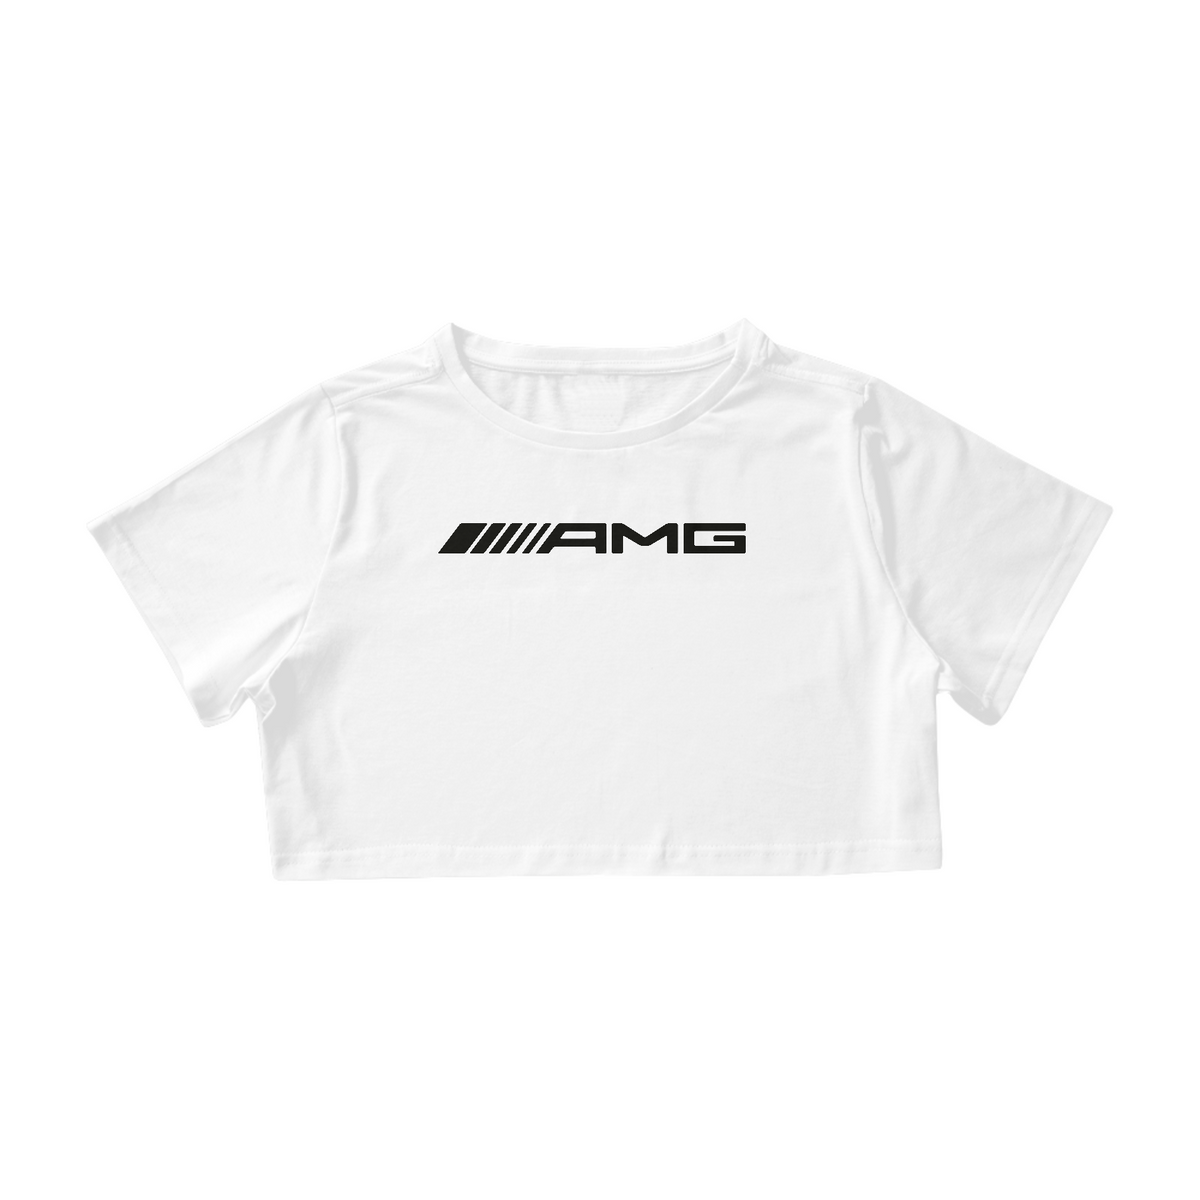 Nome do produto: Cropped AMG